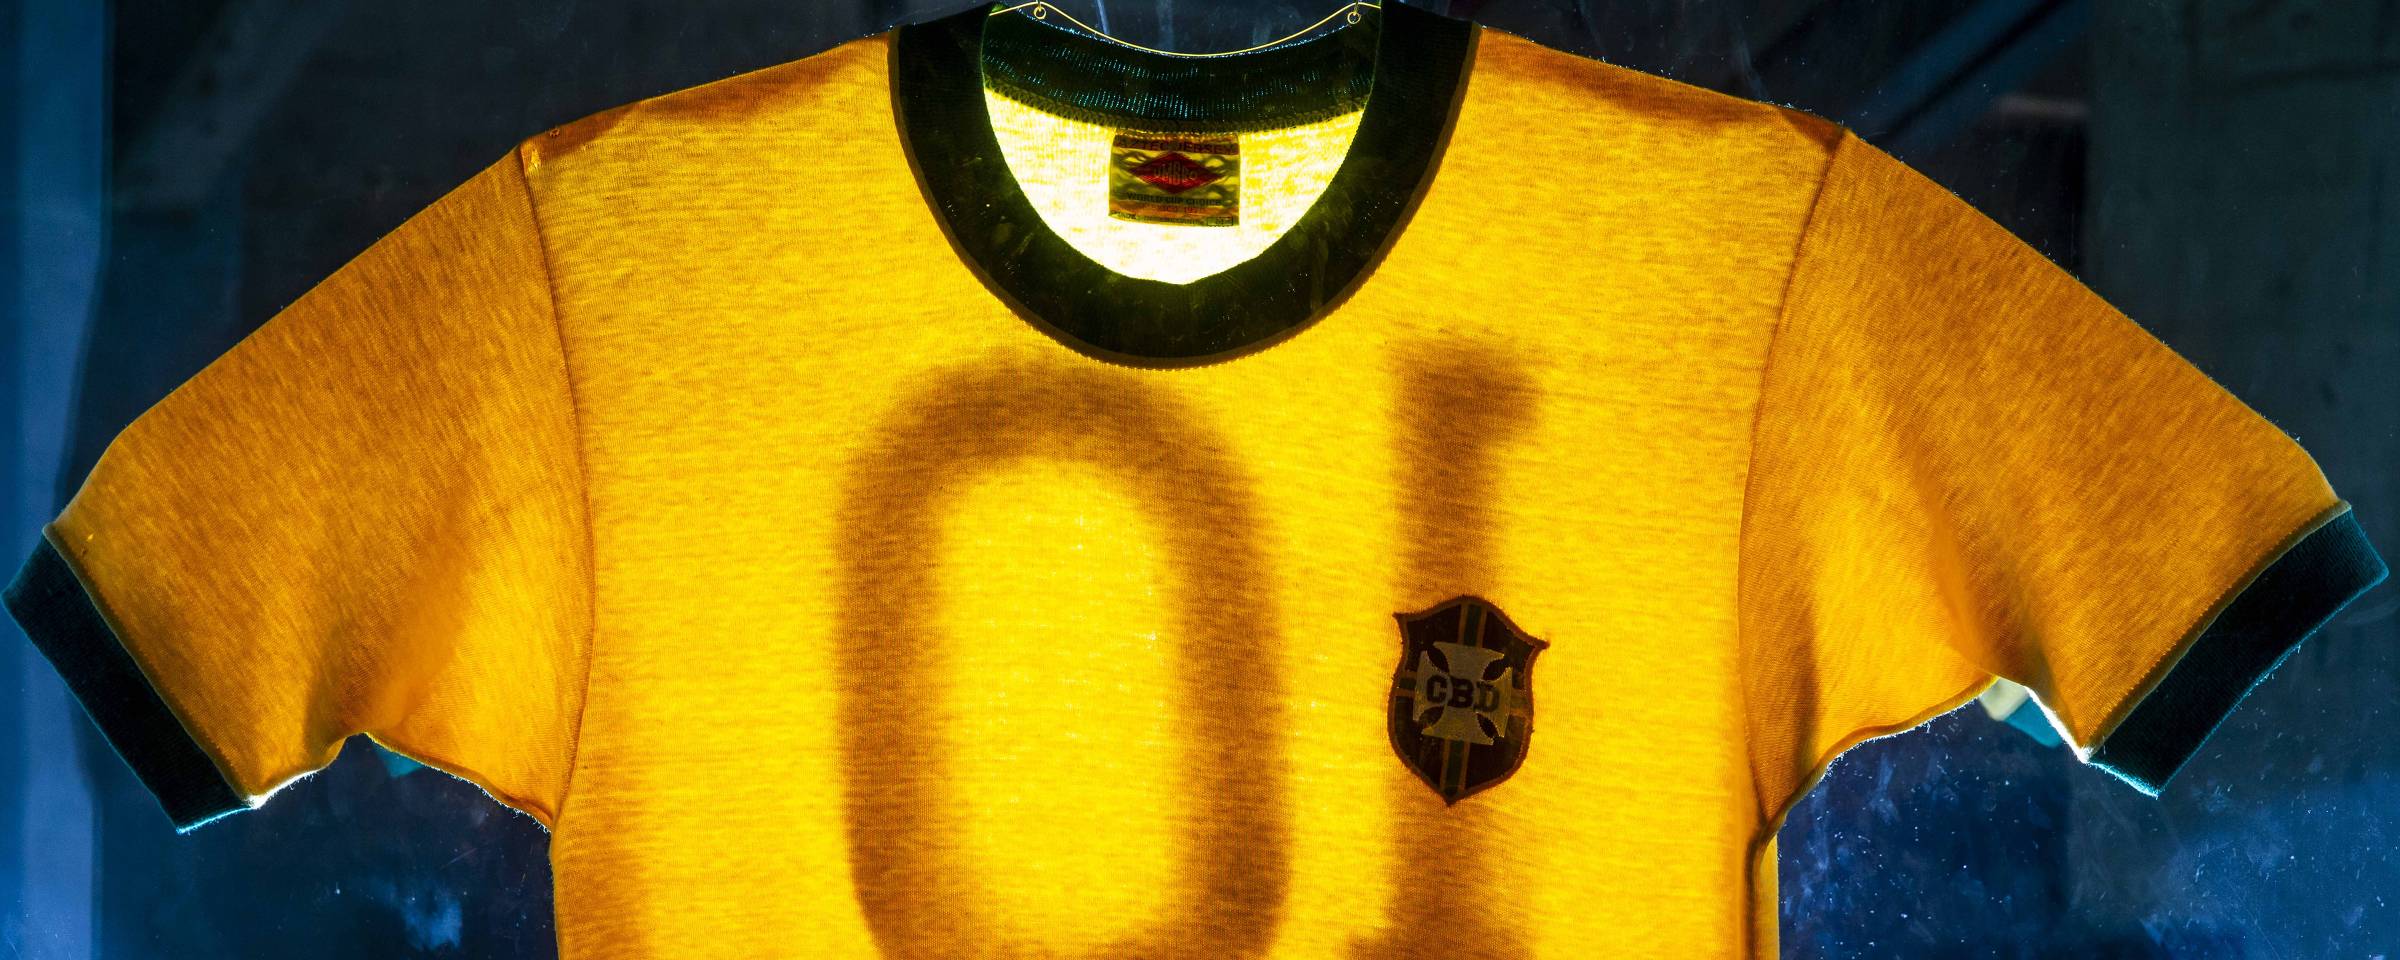 Camisa usada por Pelé na Copa do Mundo de 1970